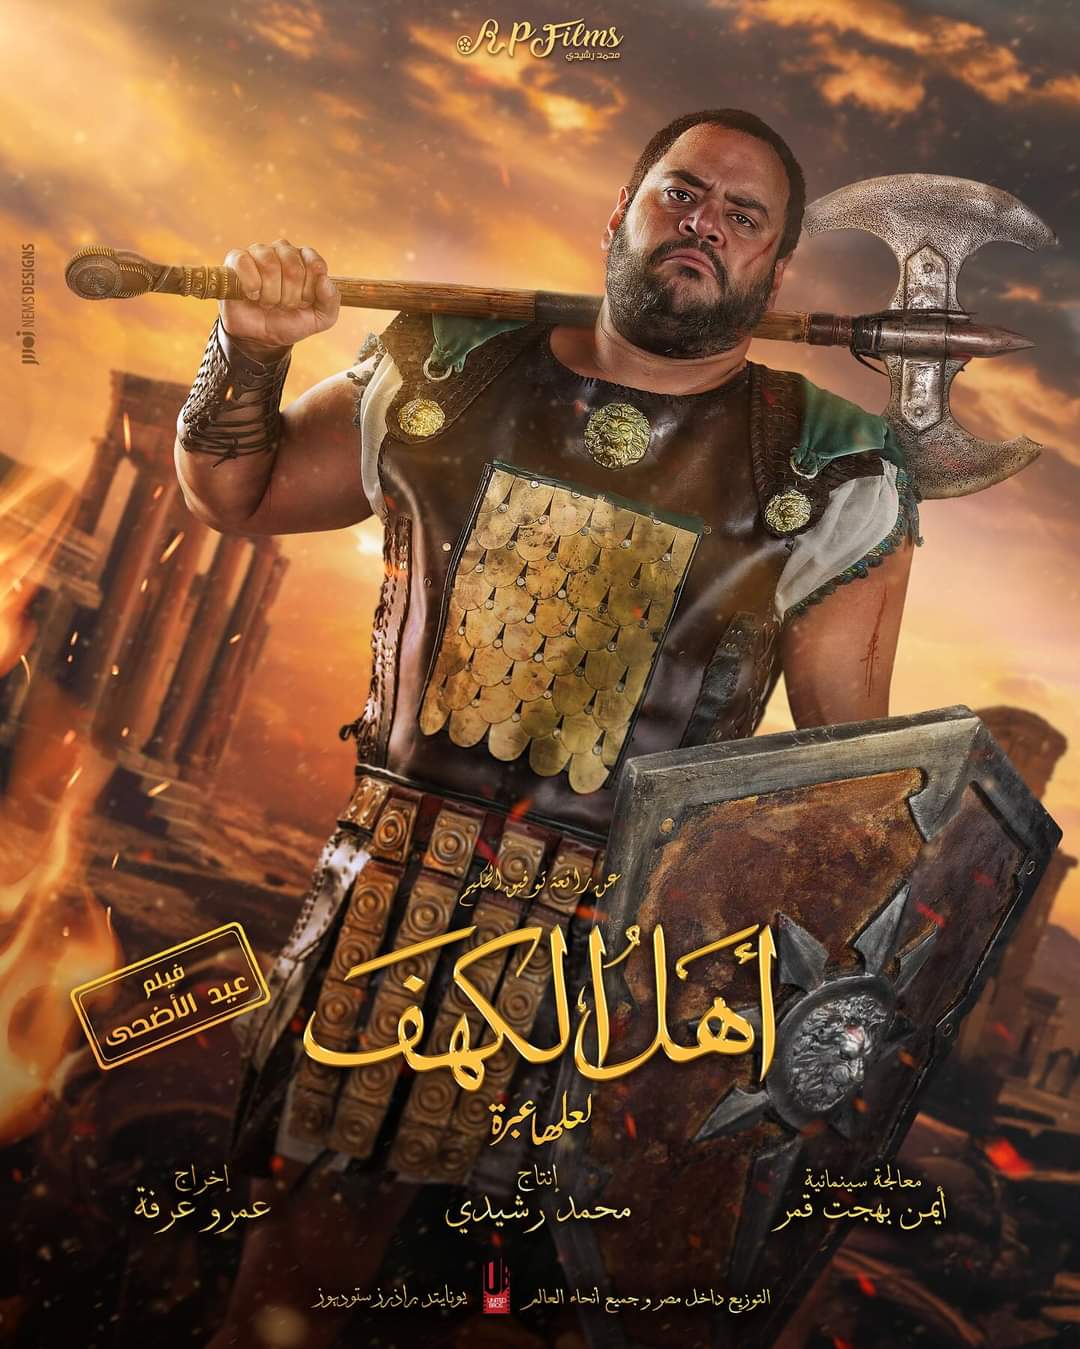 محمد ممدوح تايسون بوستر فيلم اهل الكهف